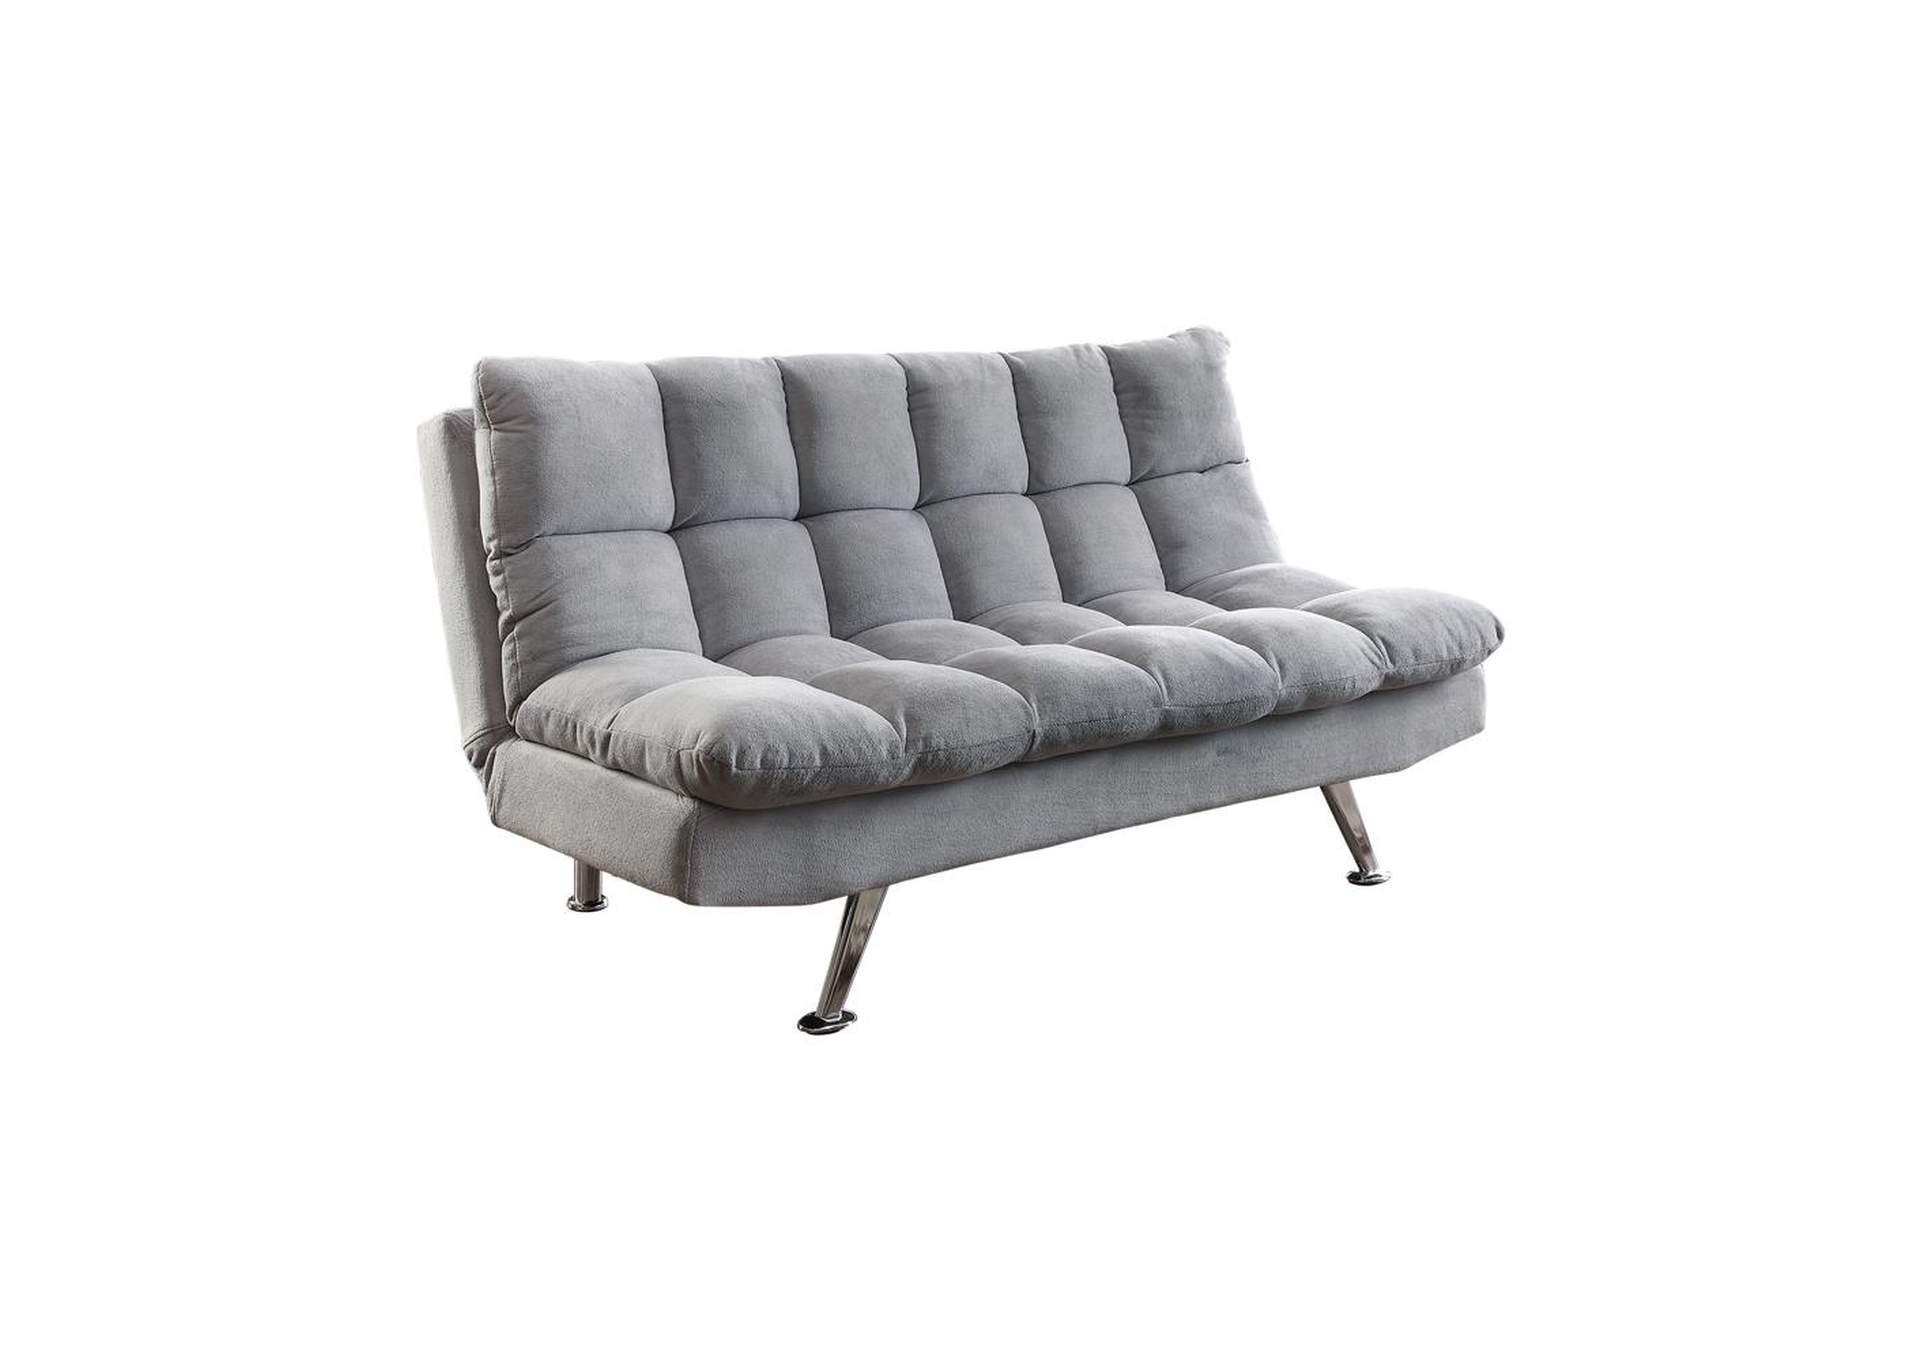 Elise Biscuit Tufted Back Sofa Bed Light Grey,Coaster Furniture